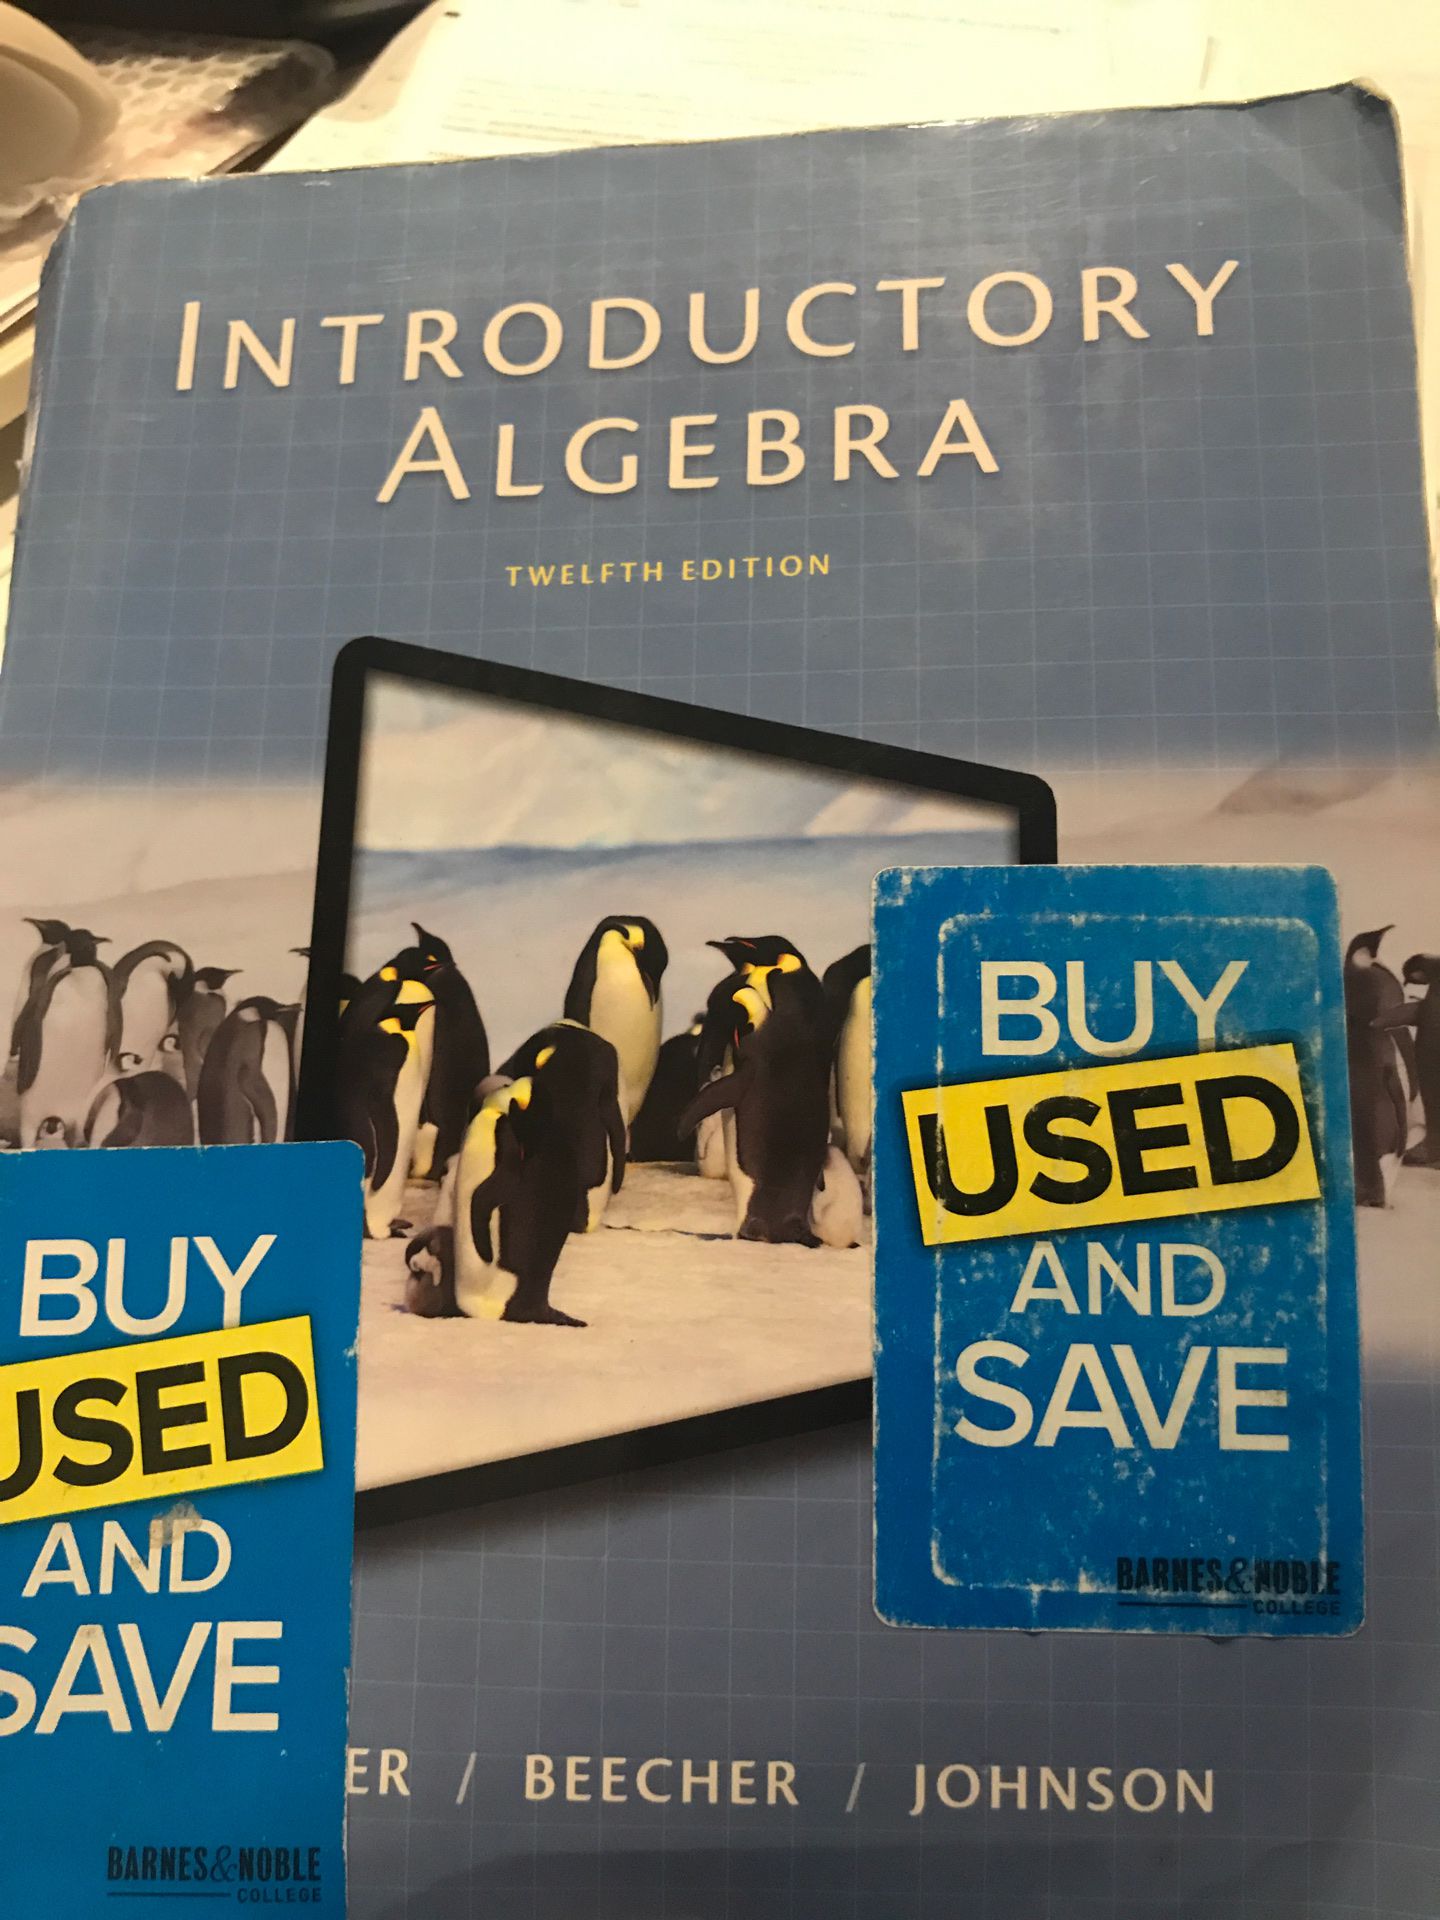 Introductory Algebra twelfth edition